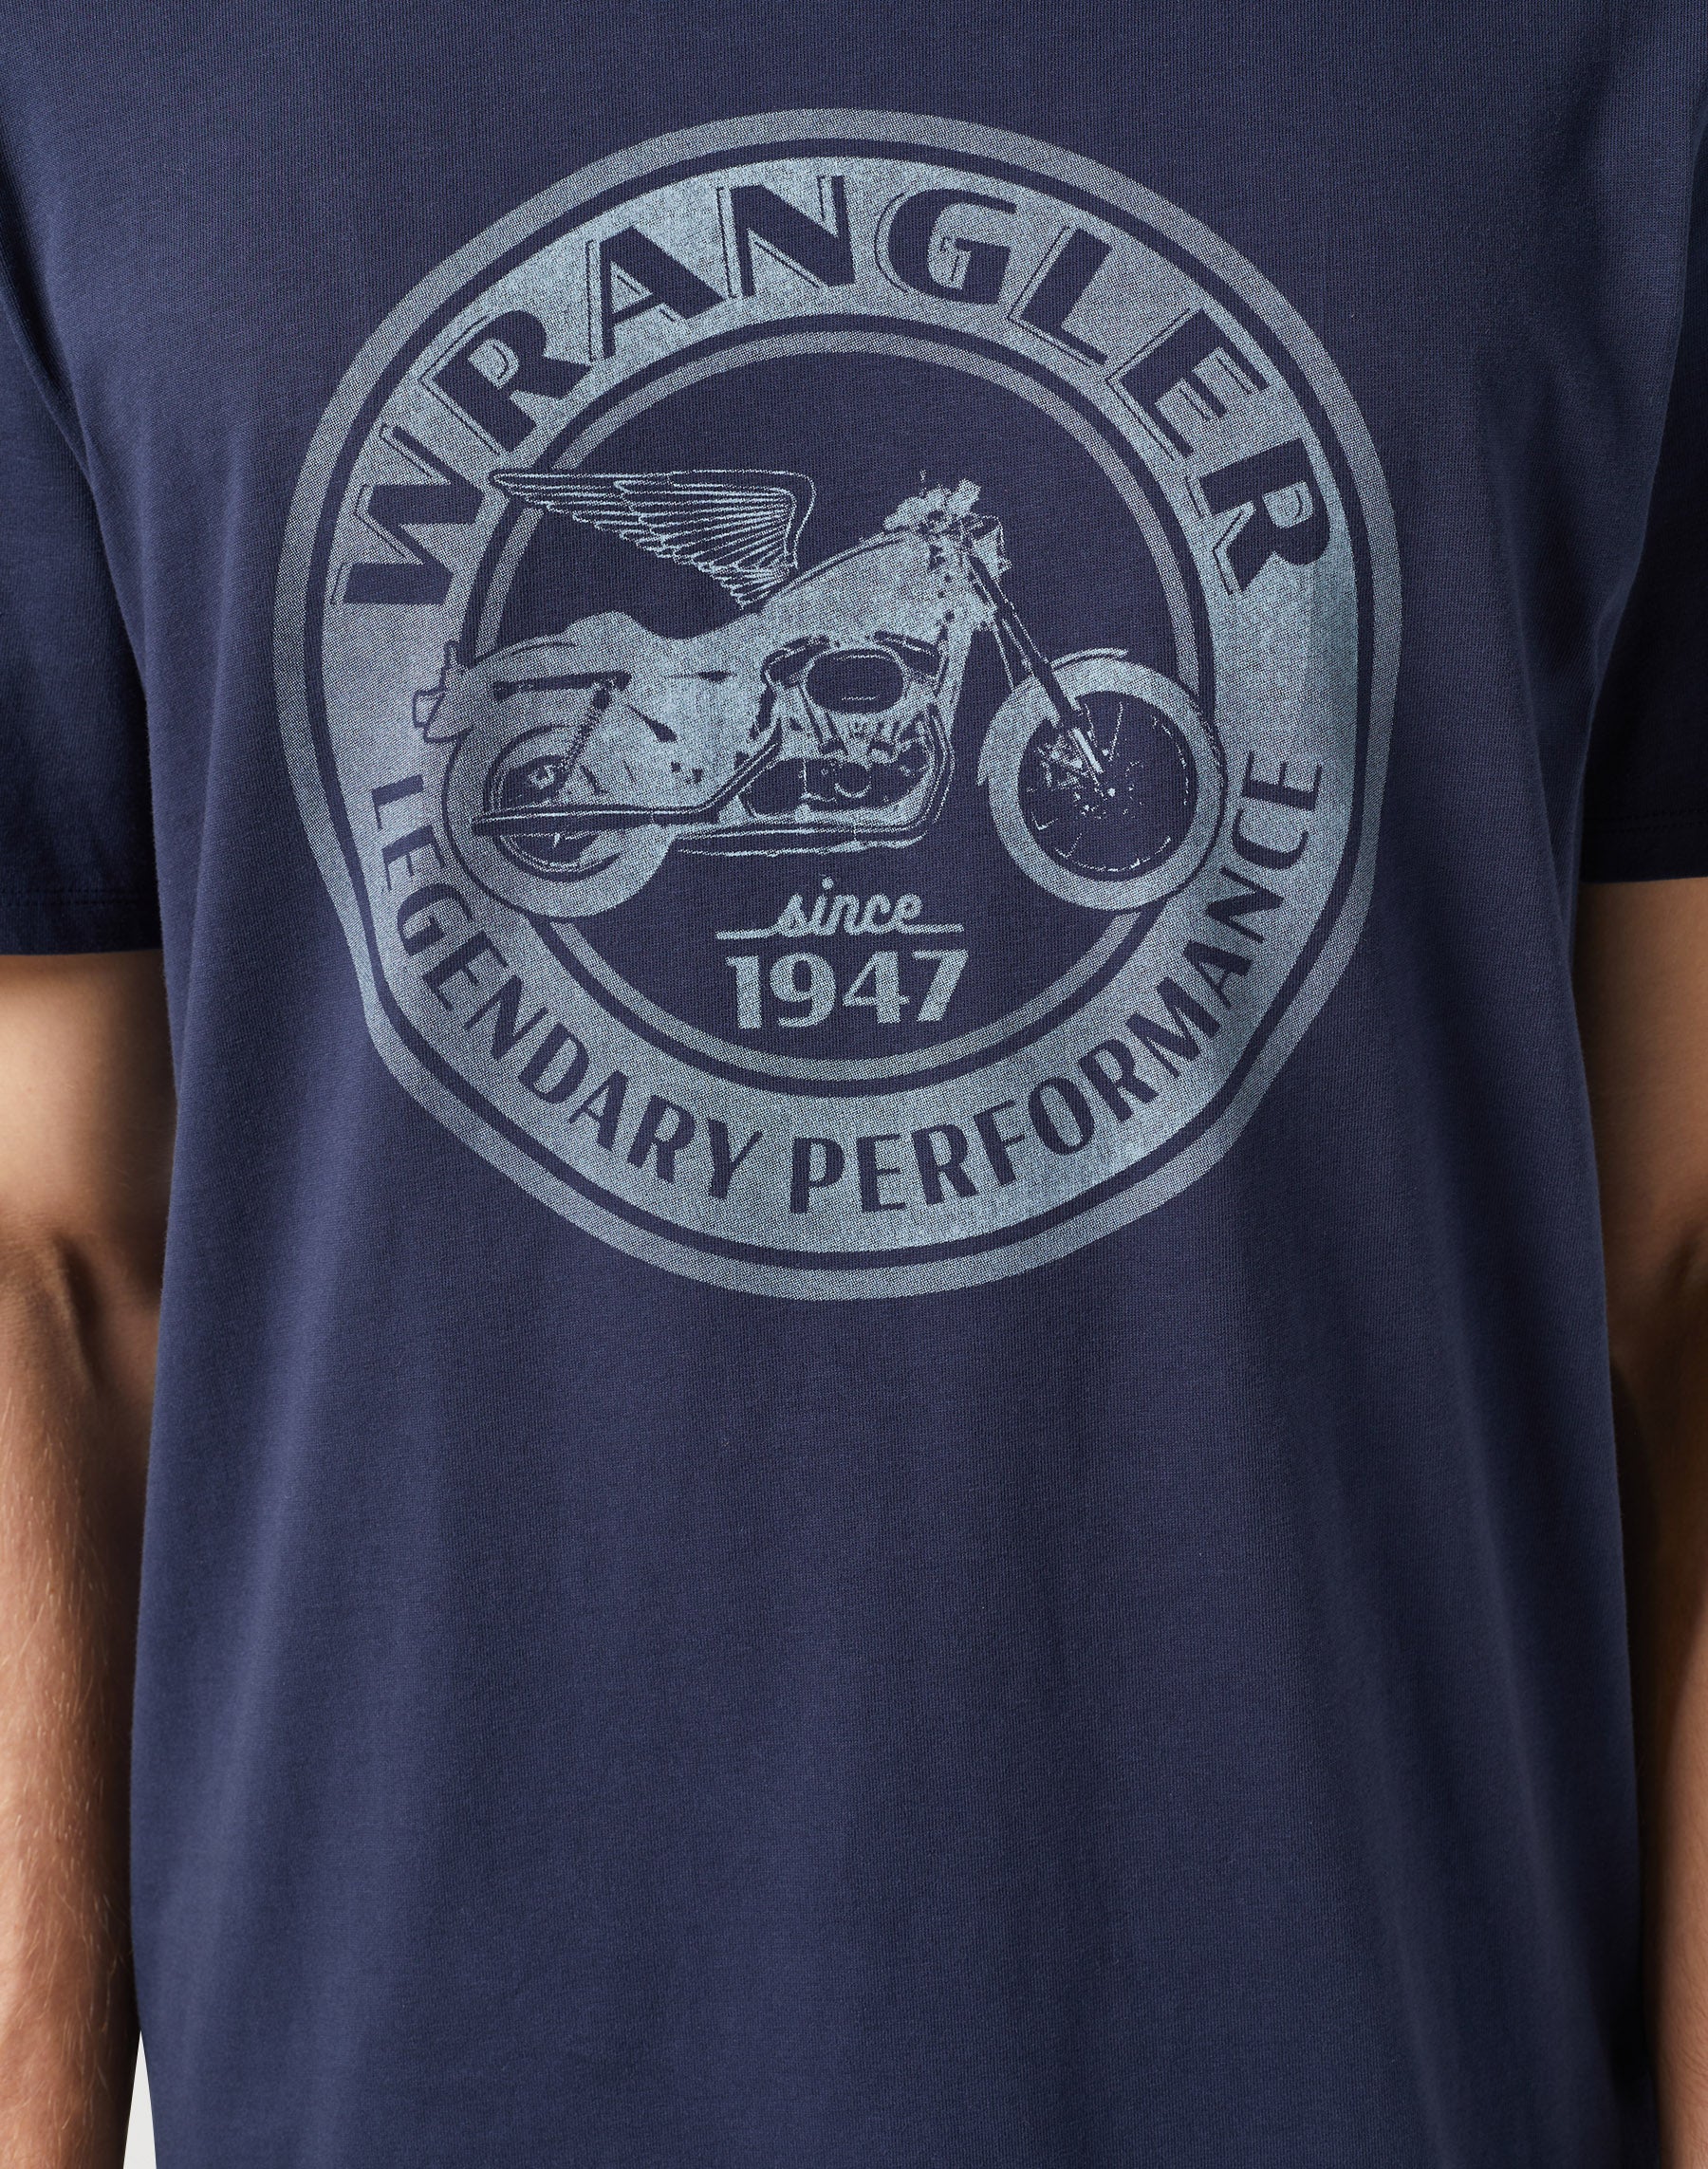 Americana Tee in Navy T-Shirts Wrangler   